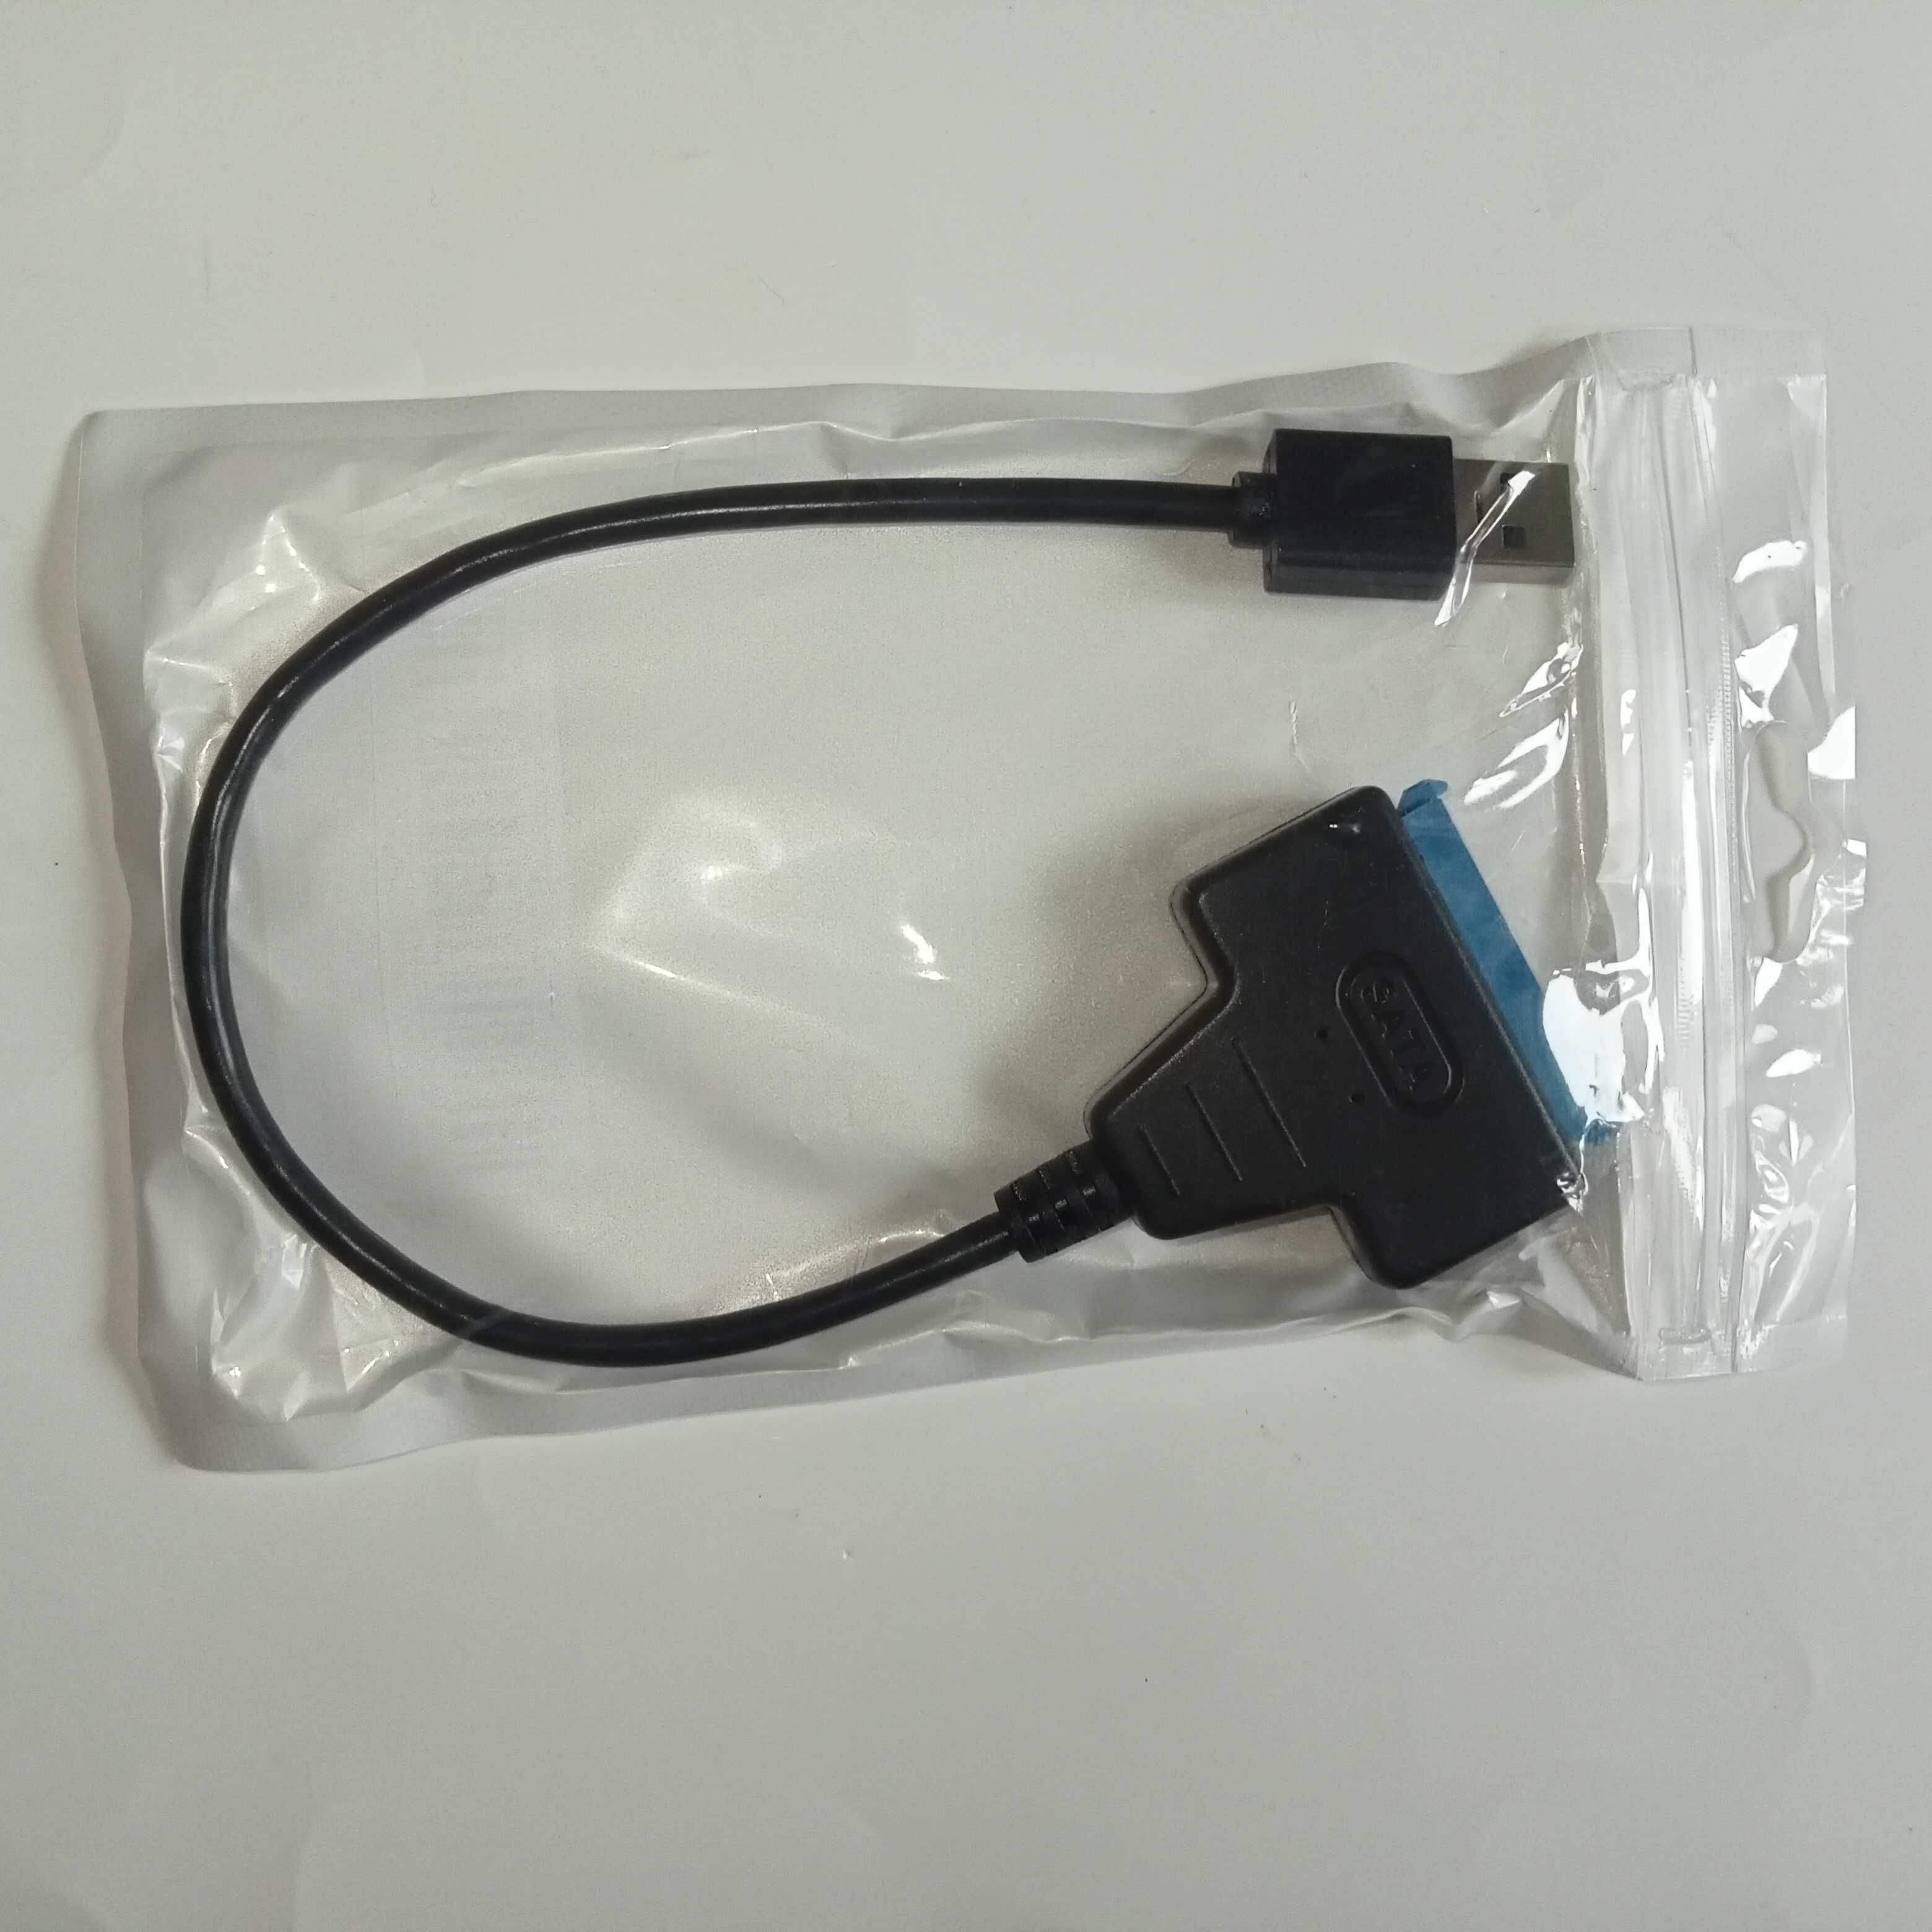 USB 3.0 SATA кабель для зберігання інфо та переносу фото, відео ін.